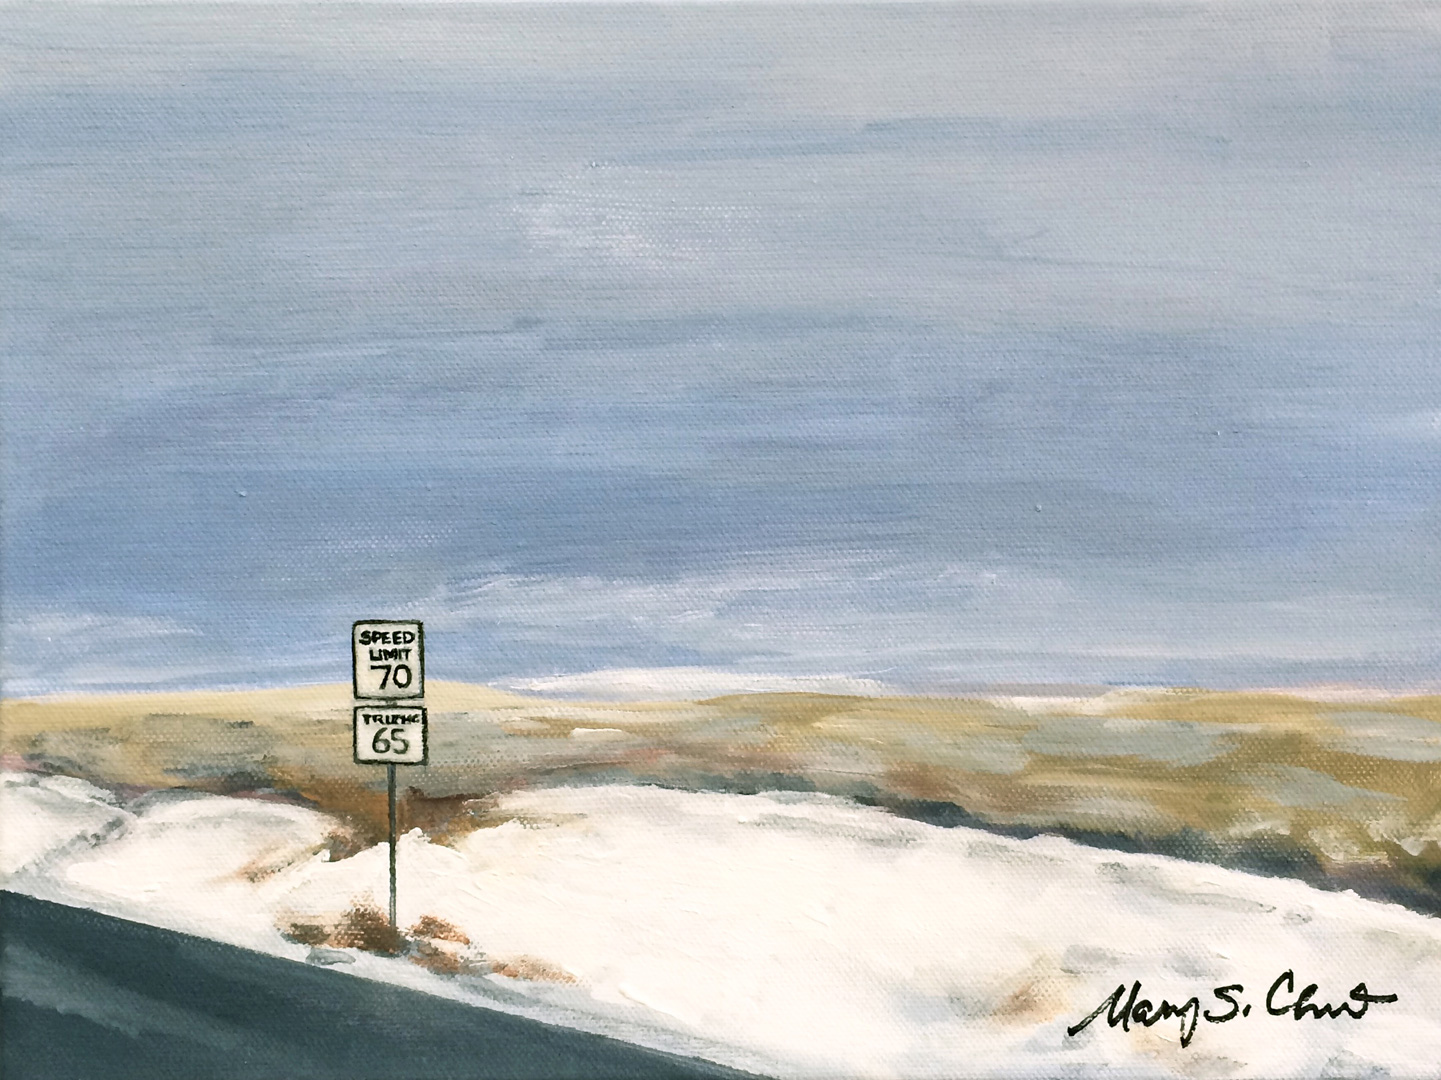 High Desert with Snow, Acrylic on canvas, 12 x 9